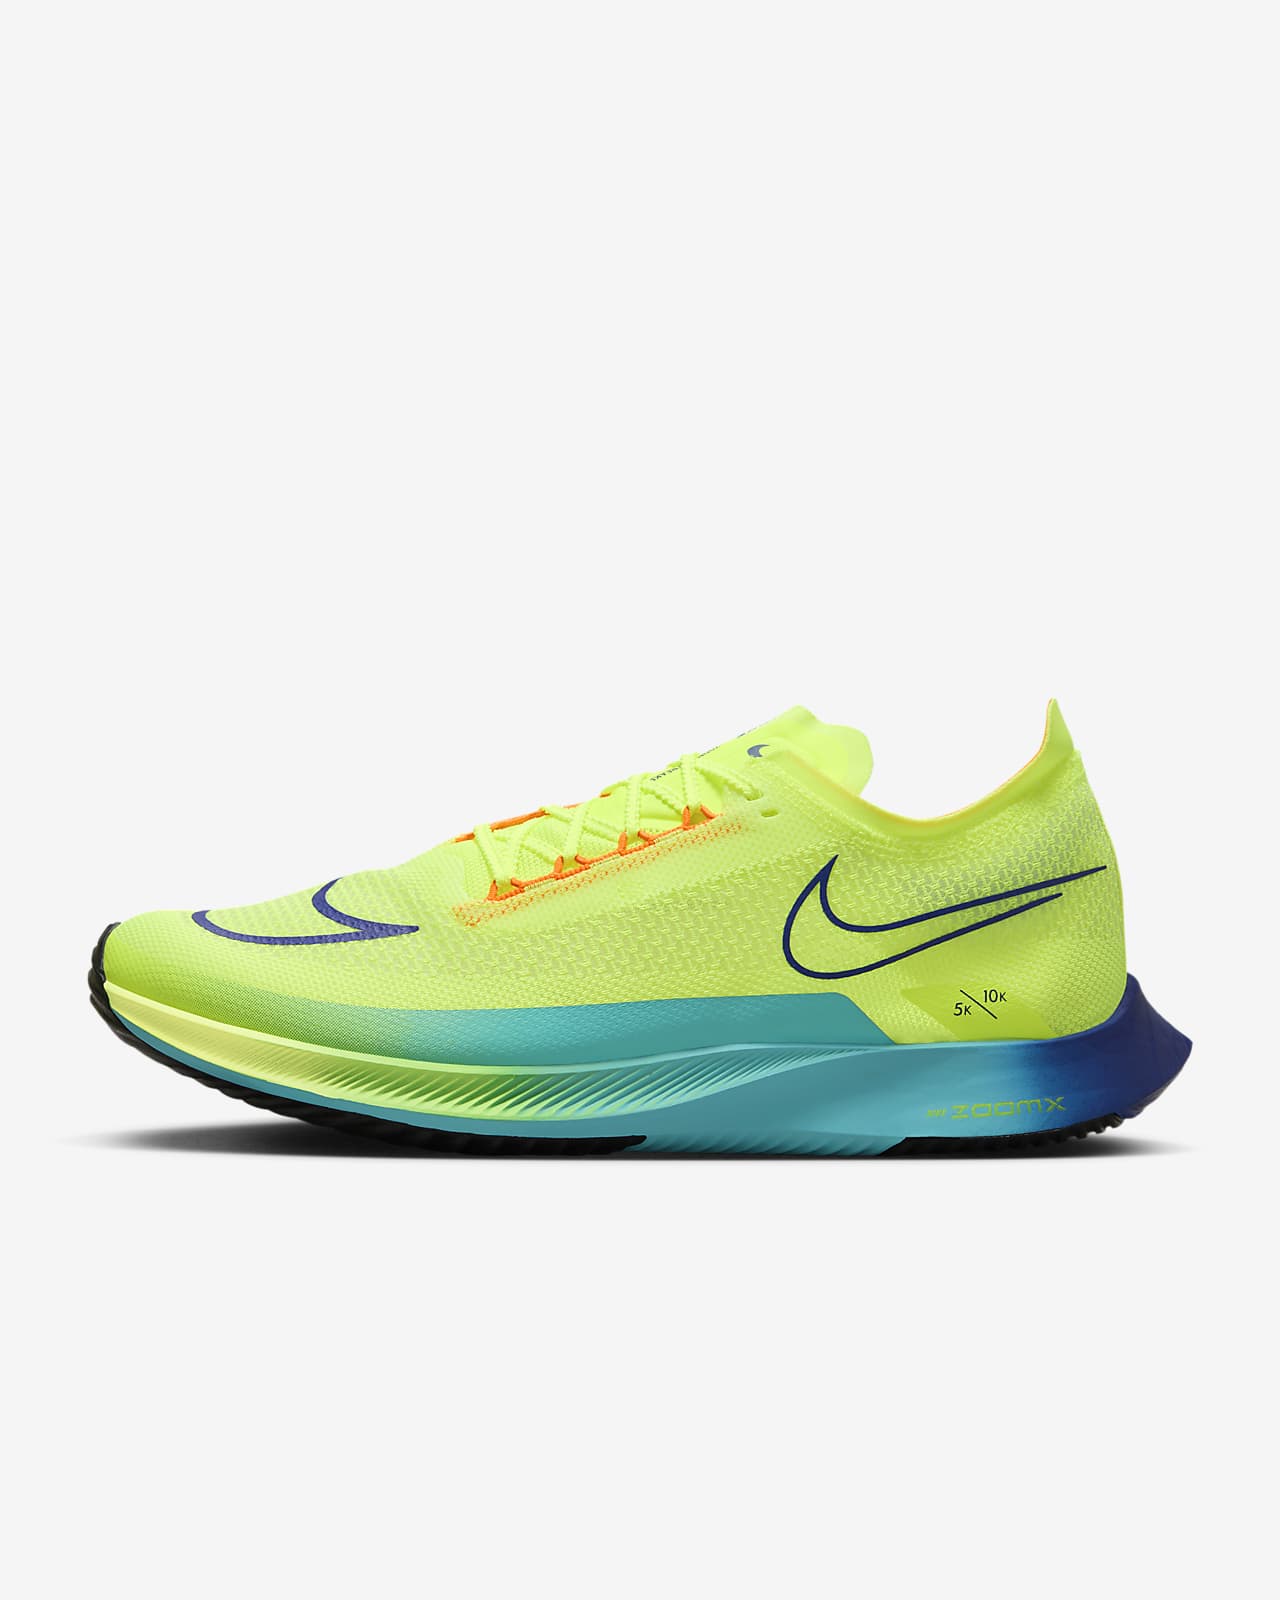 Παπούτσια αγώνων δρόμου Nike Streakfly